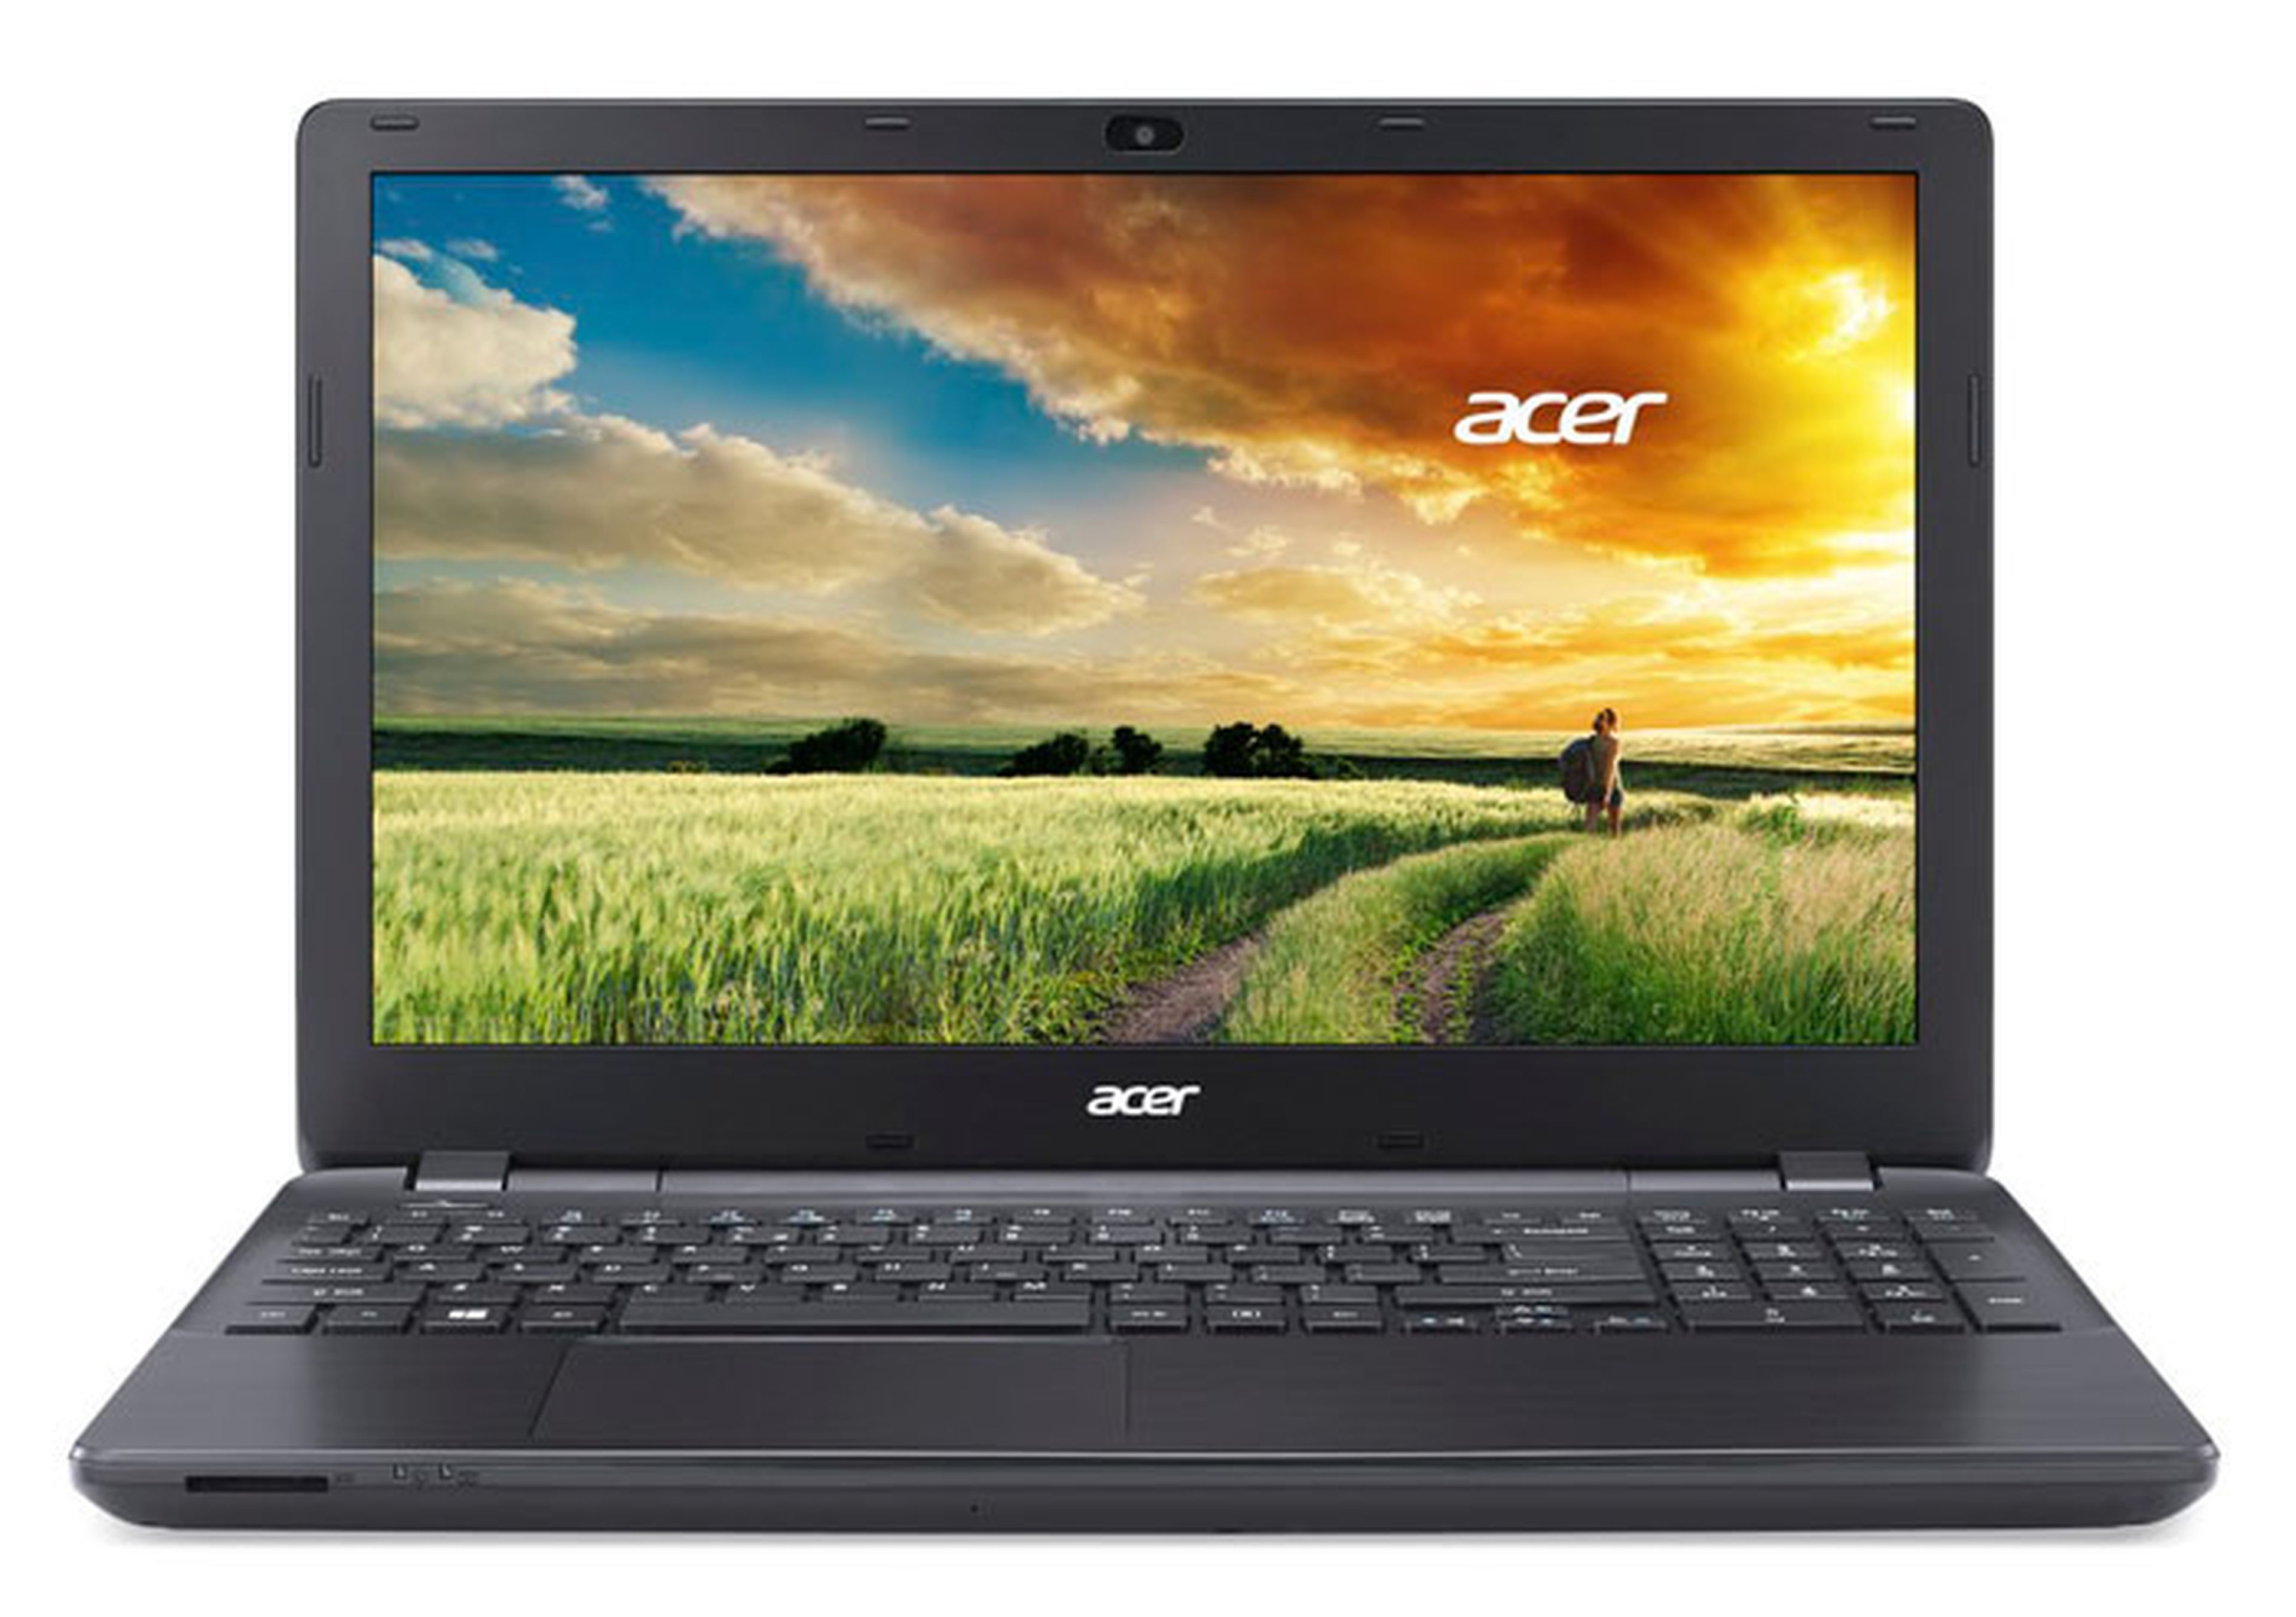 Acer Aspire E1 571PG